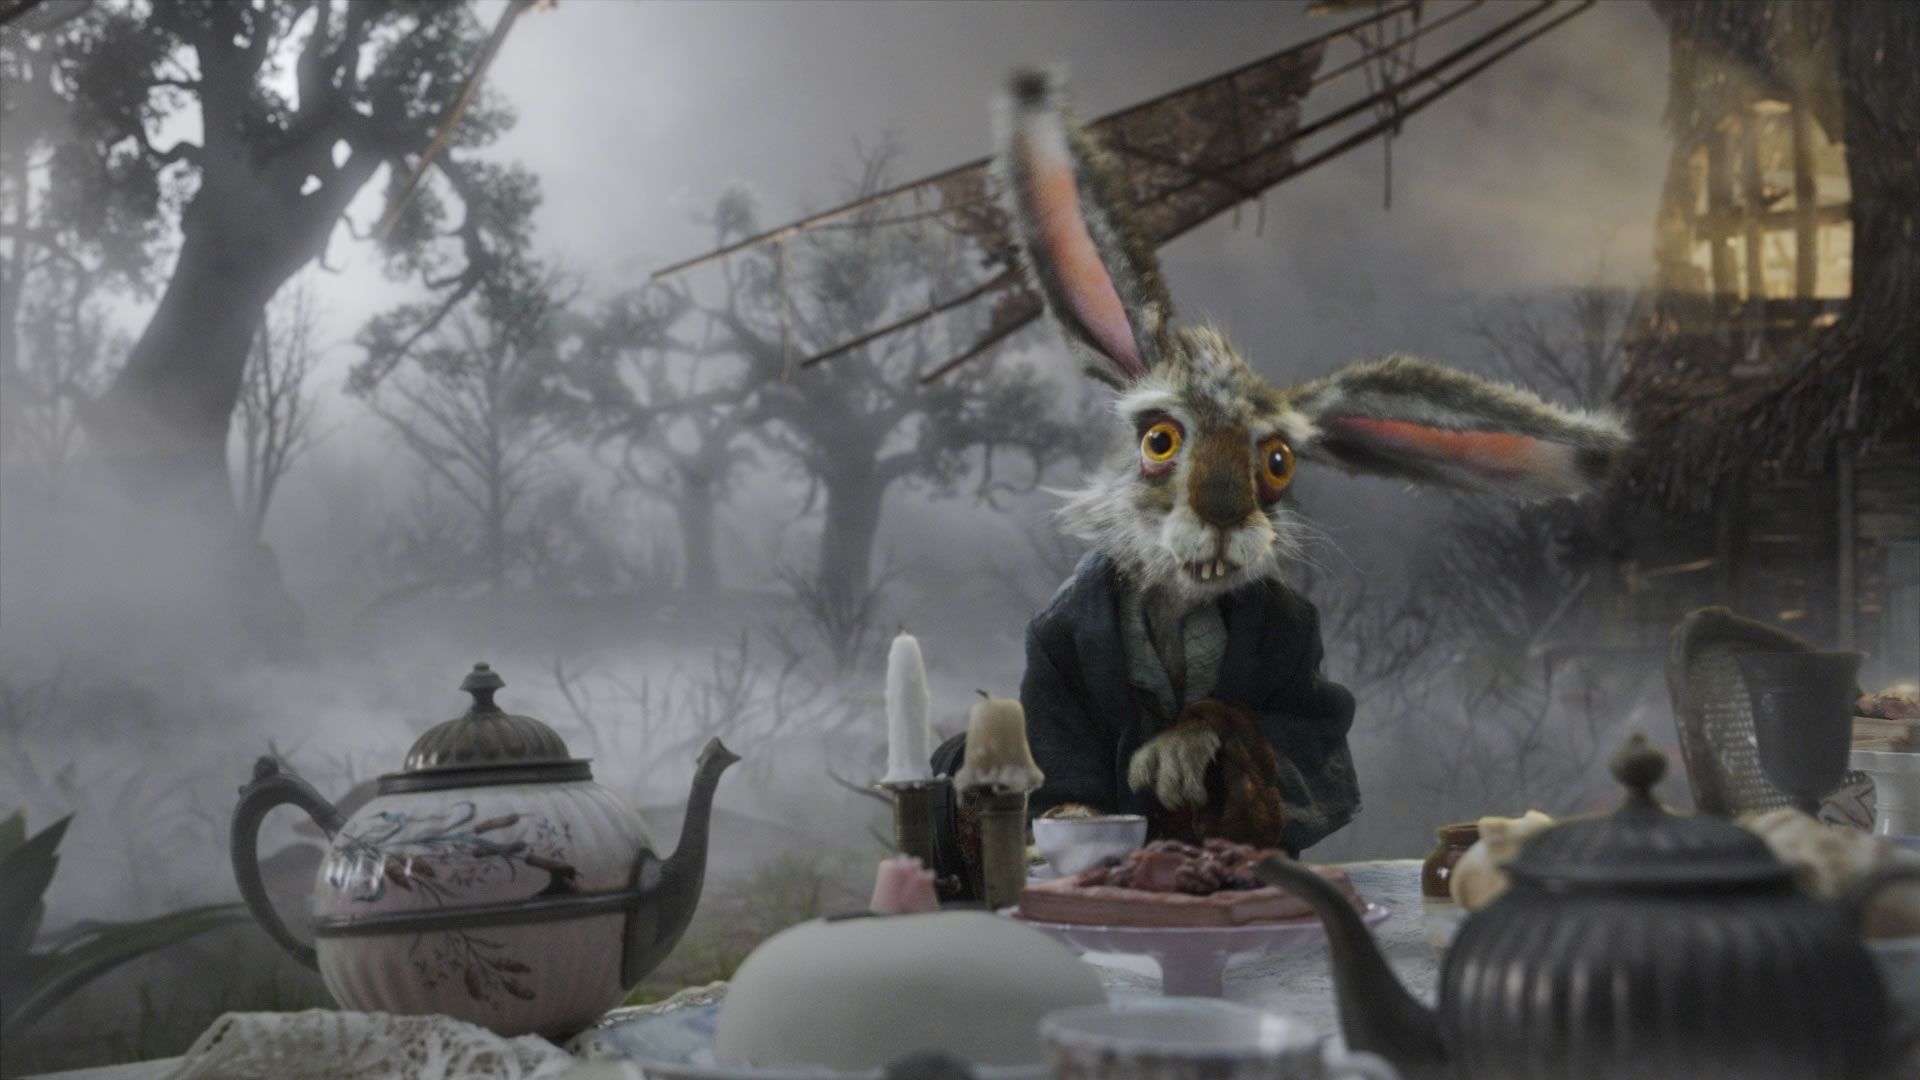 Michael Sheen as The White Rabbit